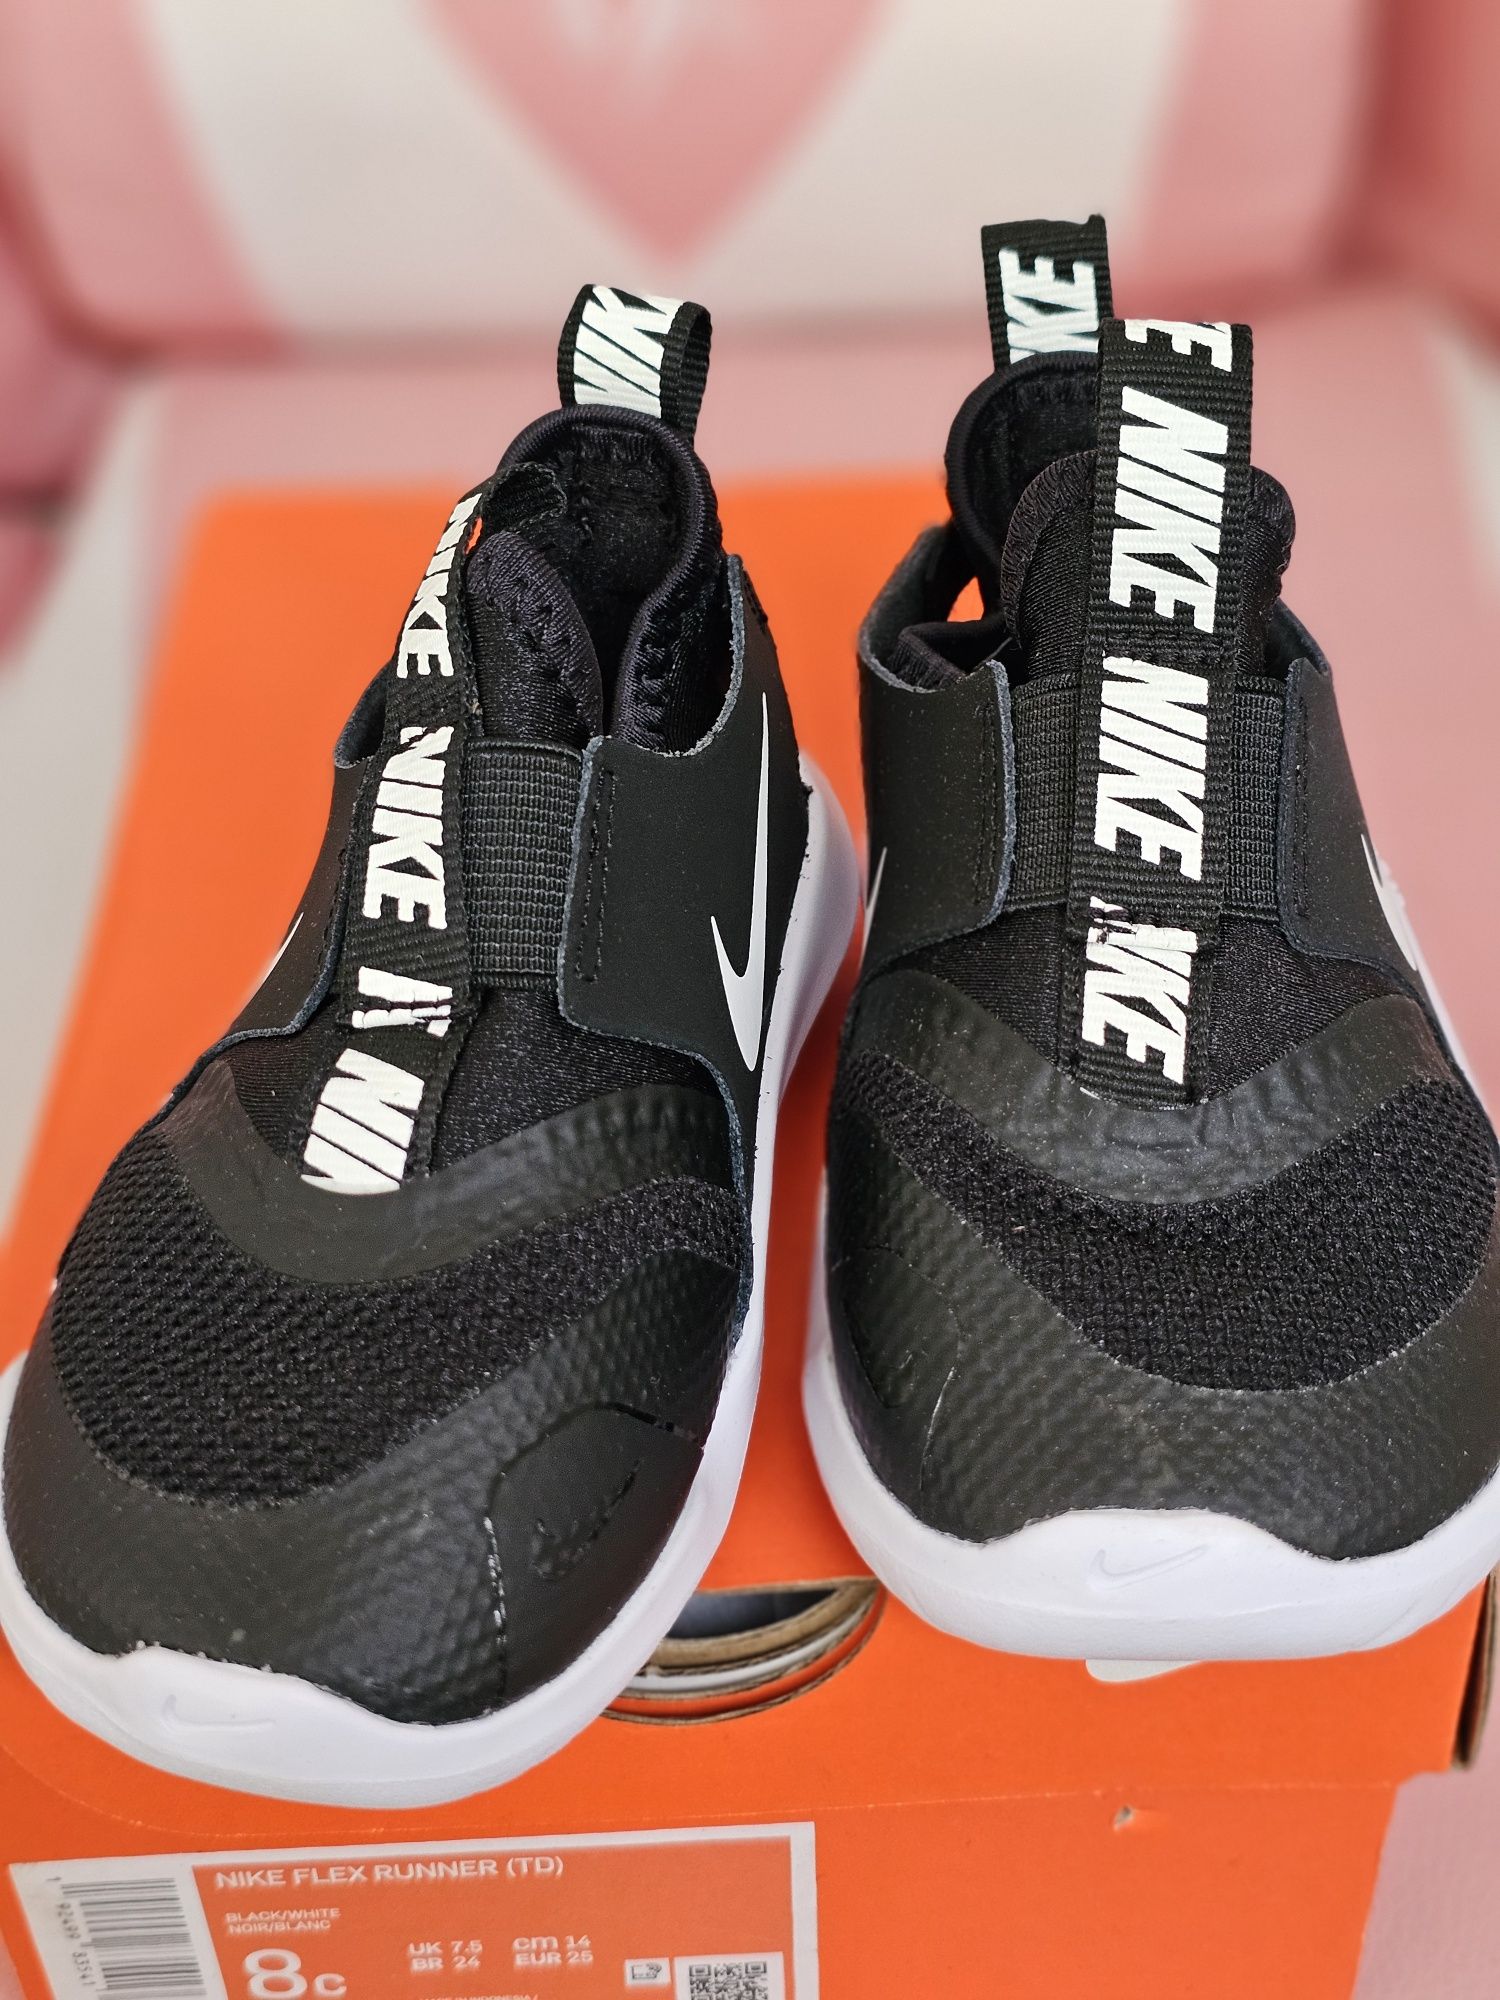 Buty nowe Nike dla dziecka eu25 wkładka 14cm